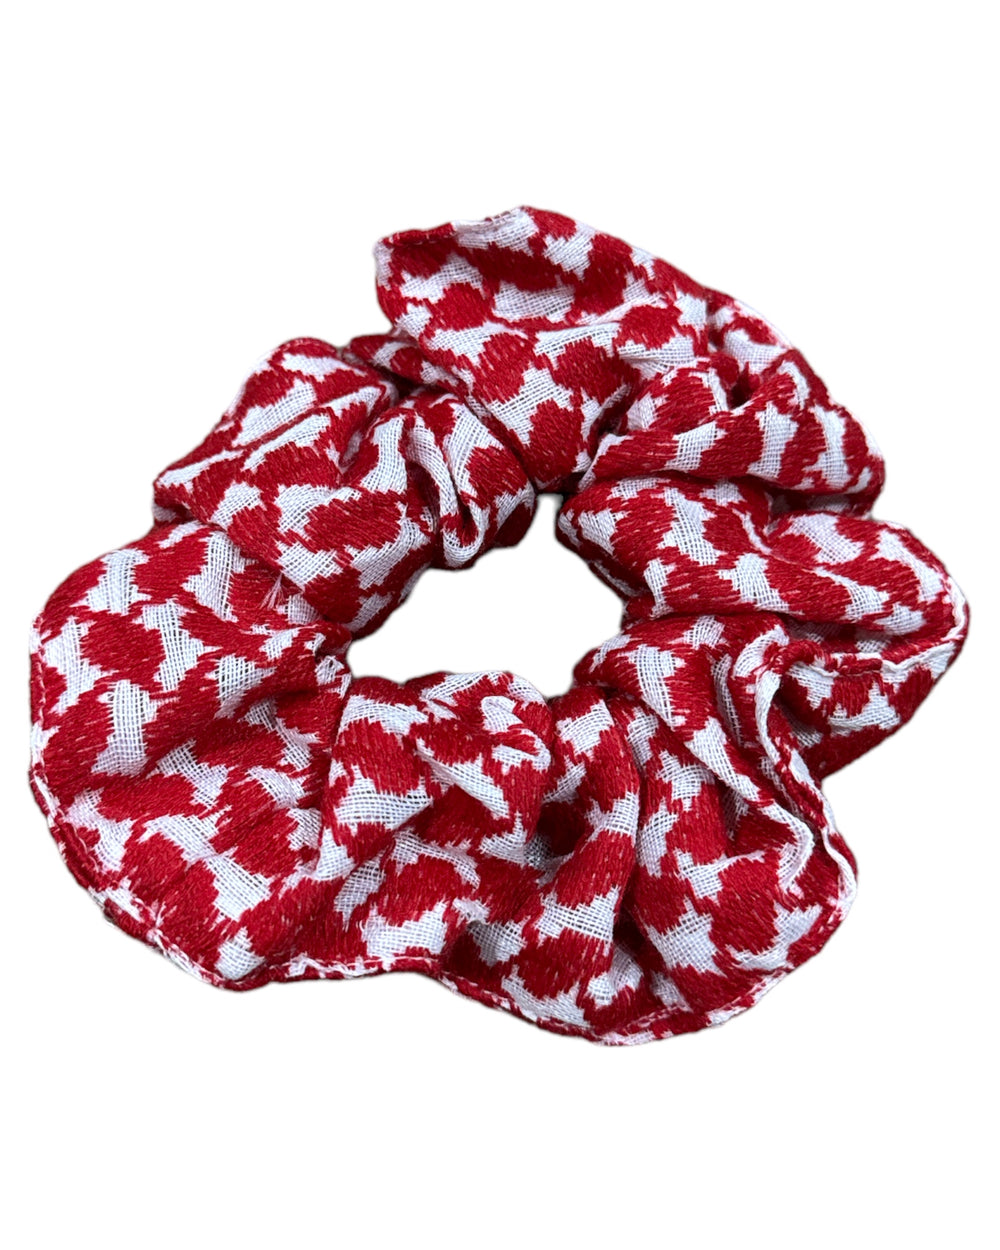 Zuhd Kuffiyeh Red & White Scrunchies (HAND MADE)